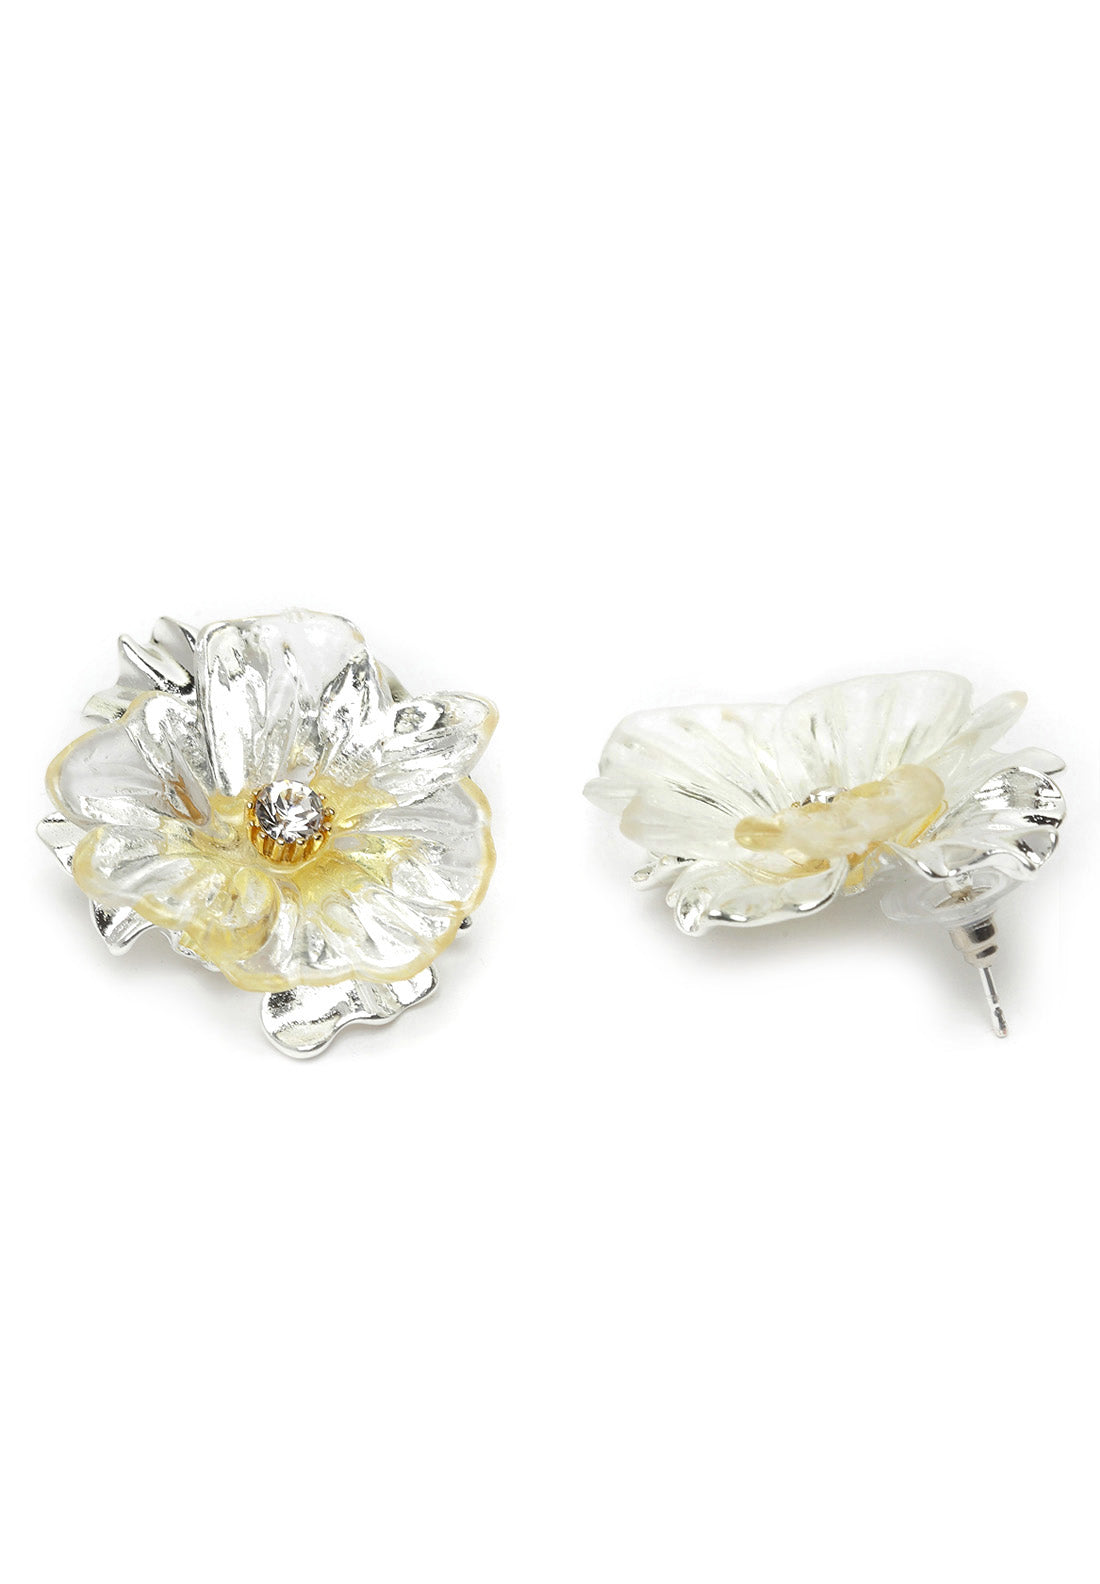 Silver Floral Crystal Stud Earrings